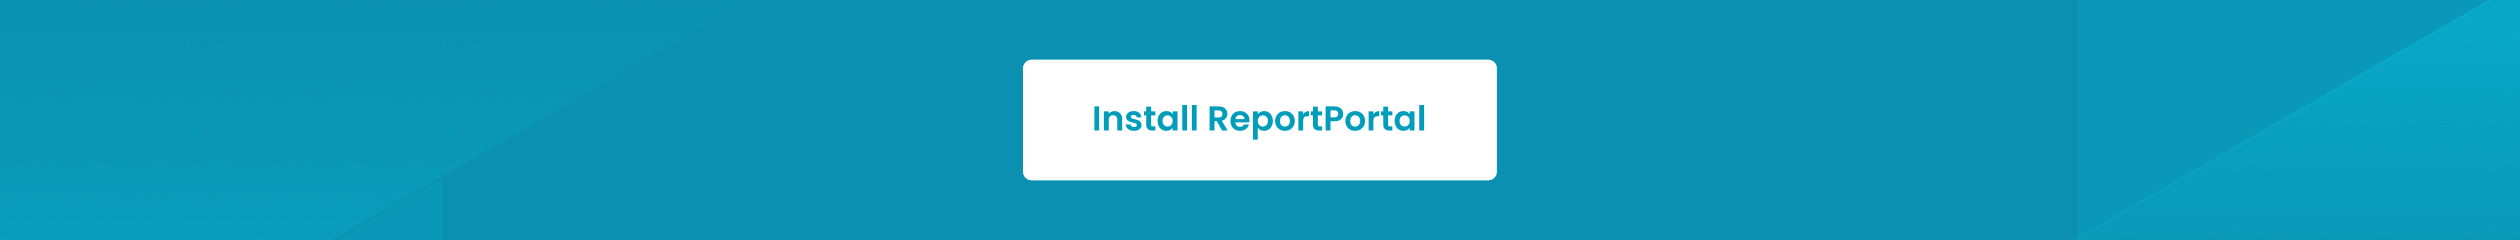 Install ReportPortal